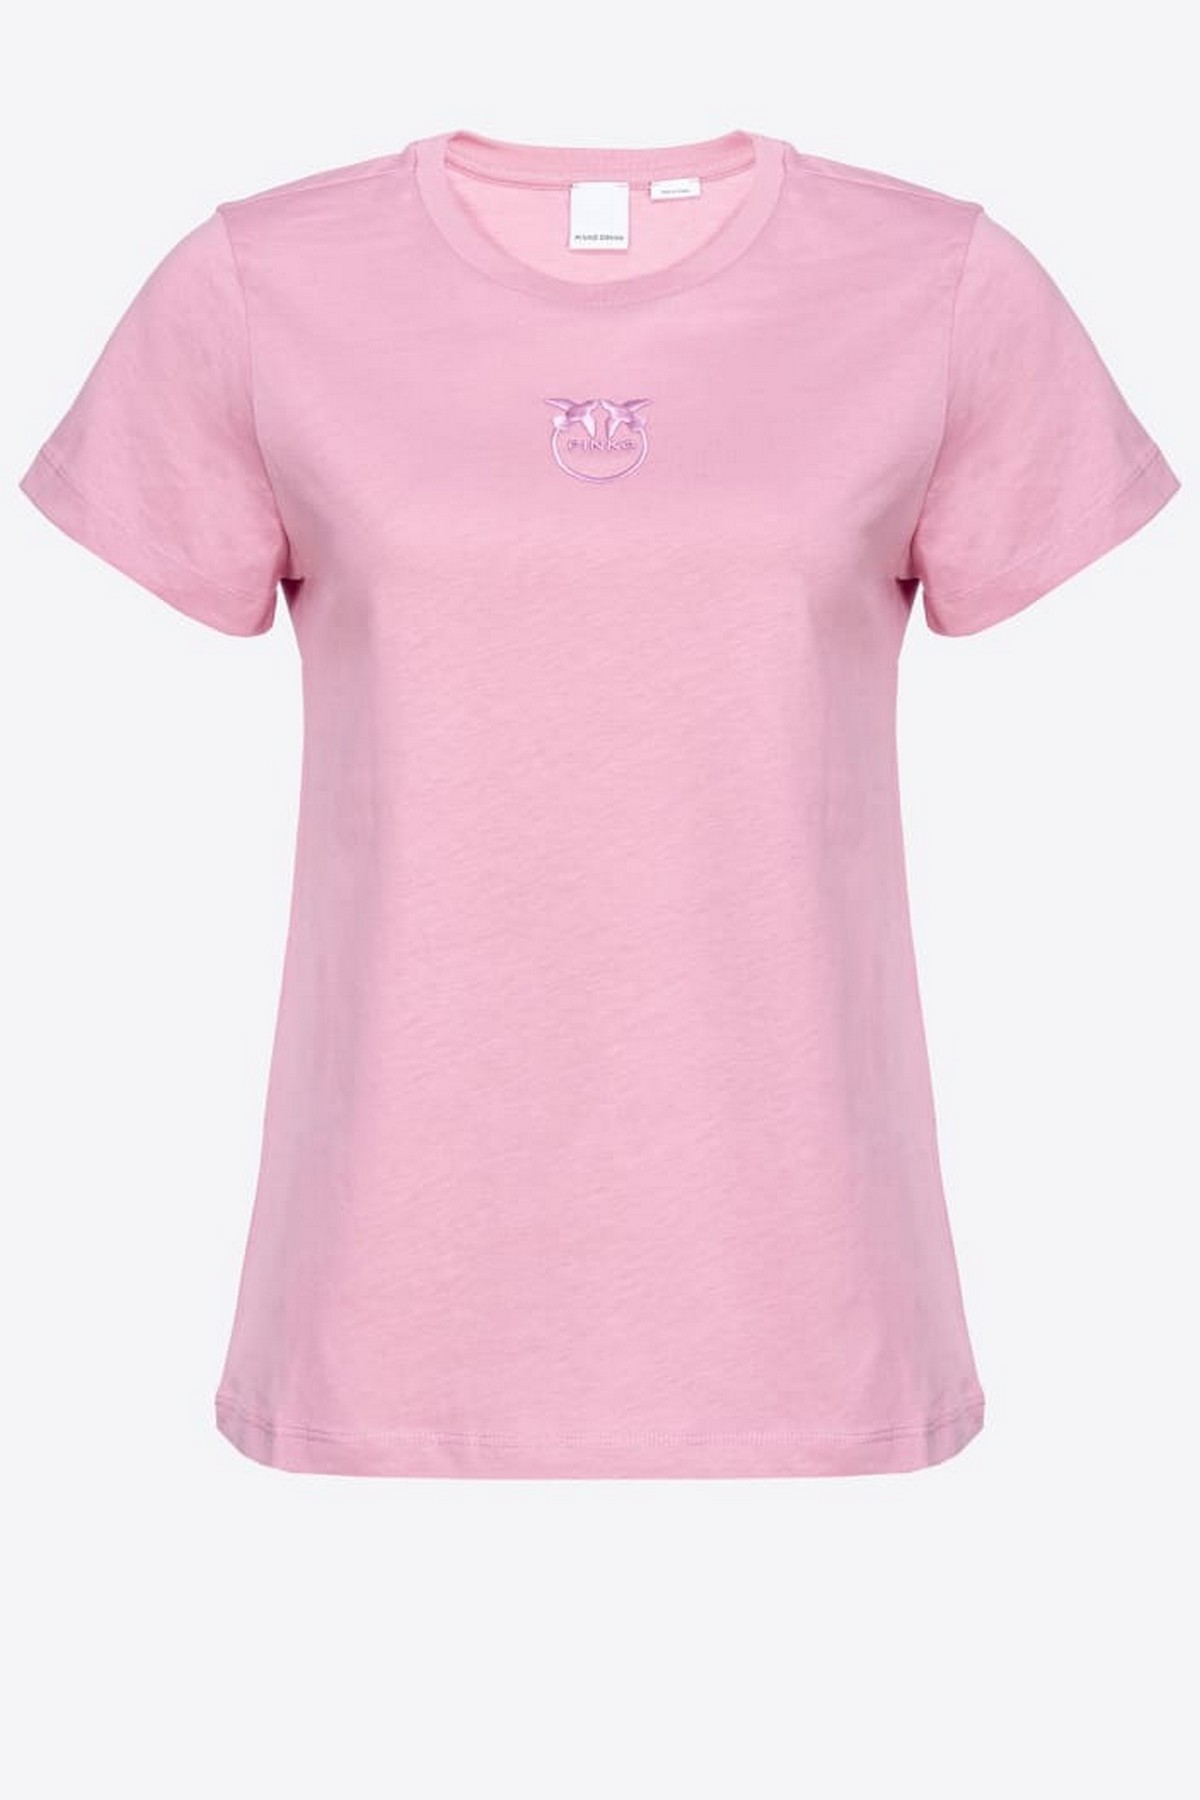 T-shirt Pinko logo in de kleur roze van het merk Pinko